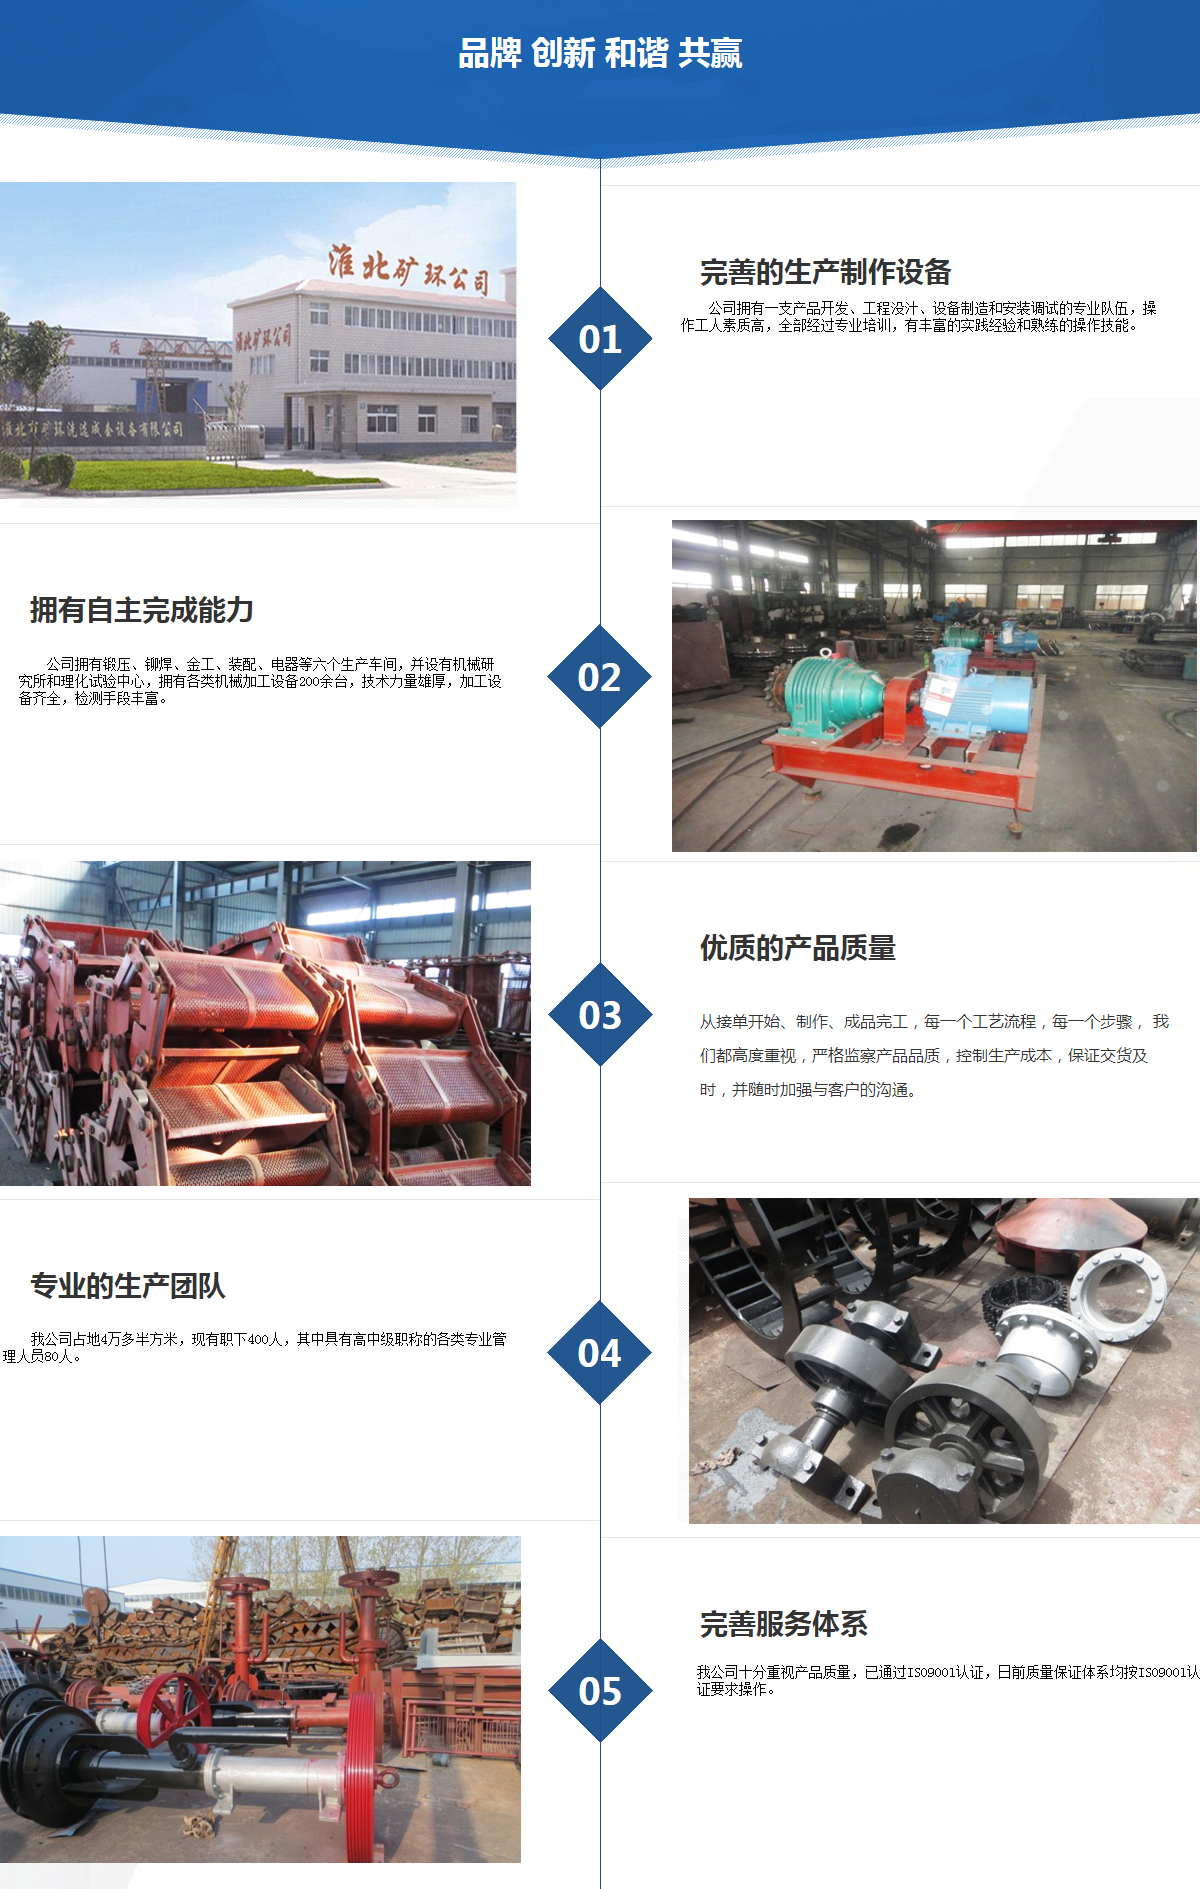 关于当前产品ig传统彩票旧版·(中国)官方网站的成功案例等相关图片